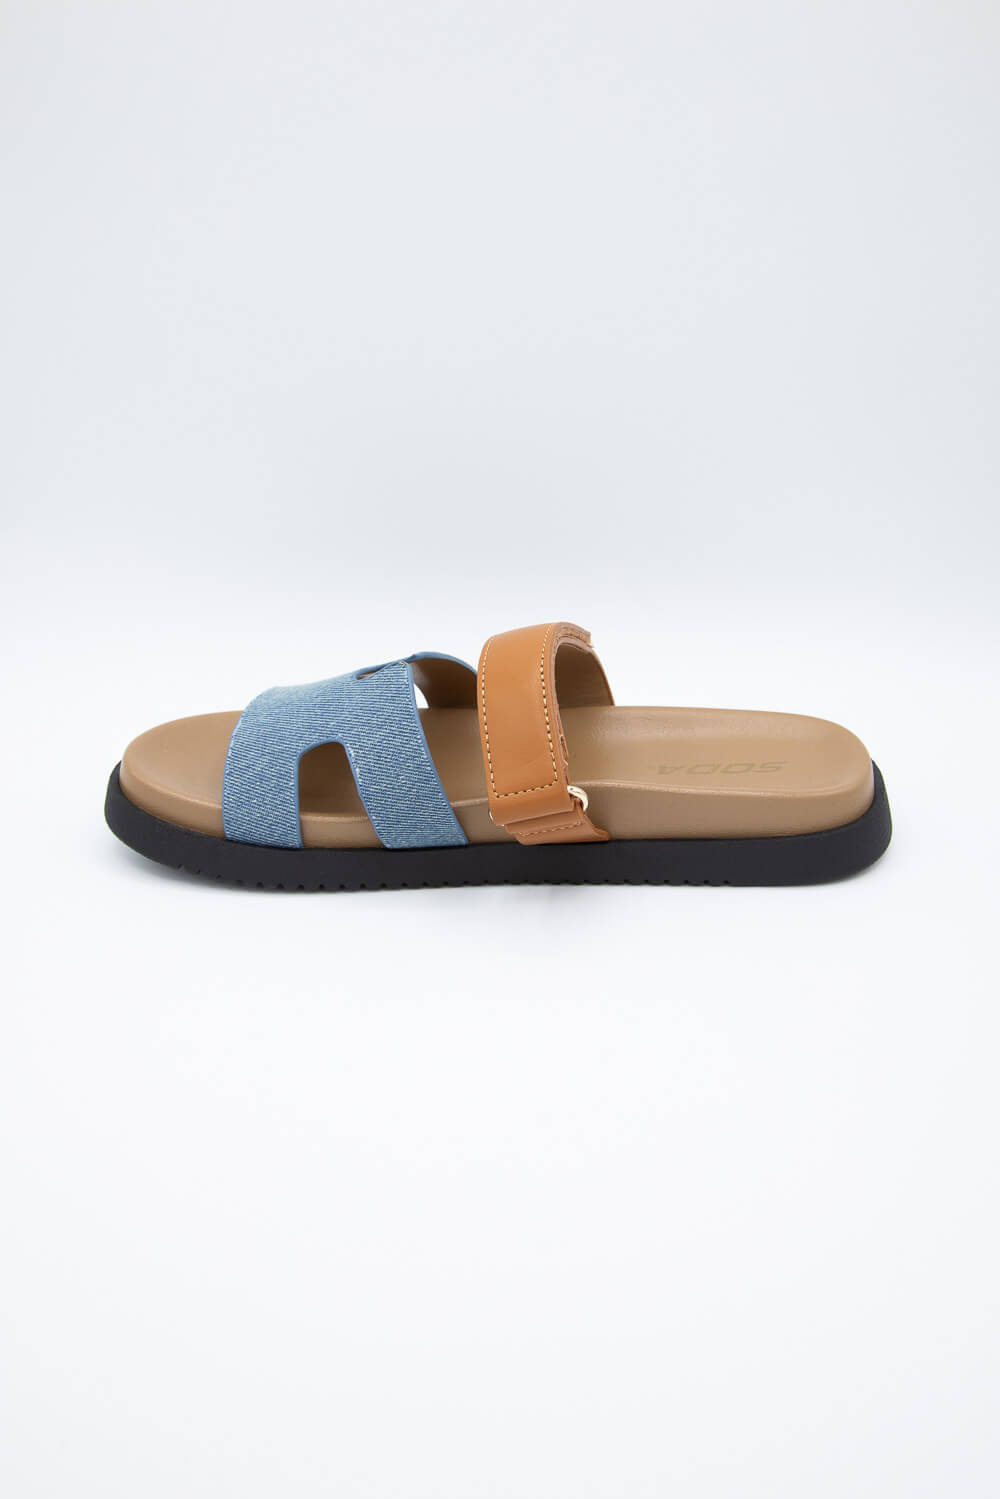 10mm Bianca Leather Slide Sandals